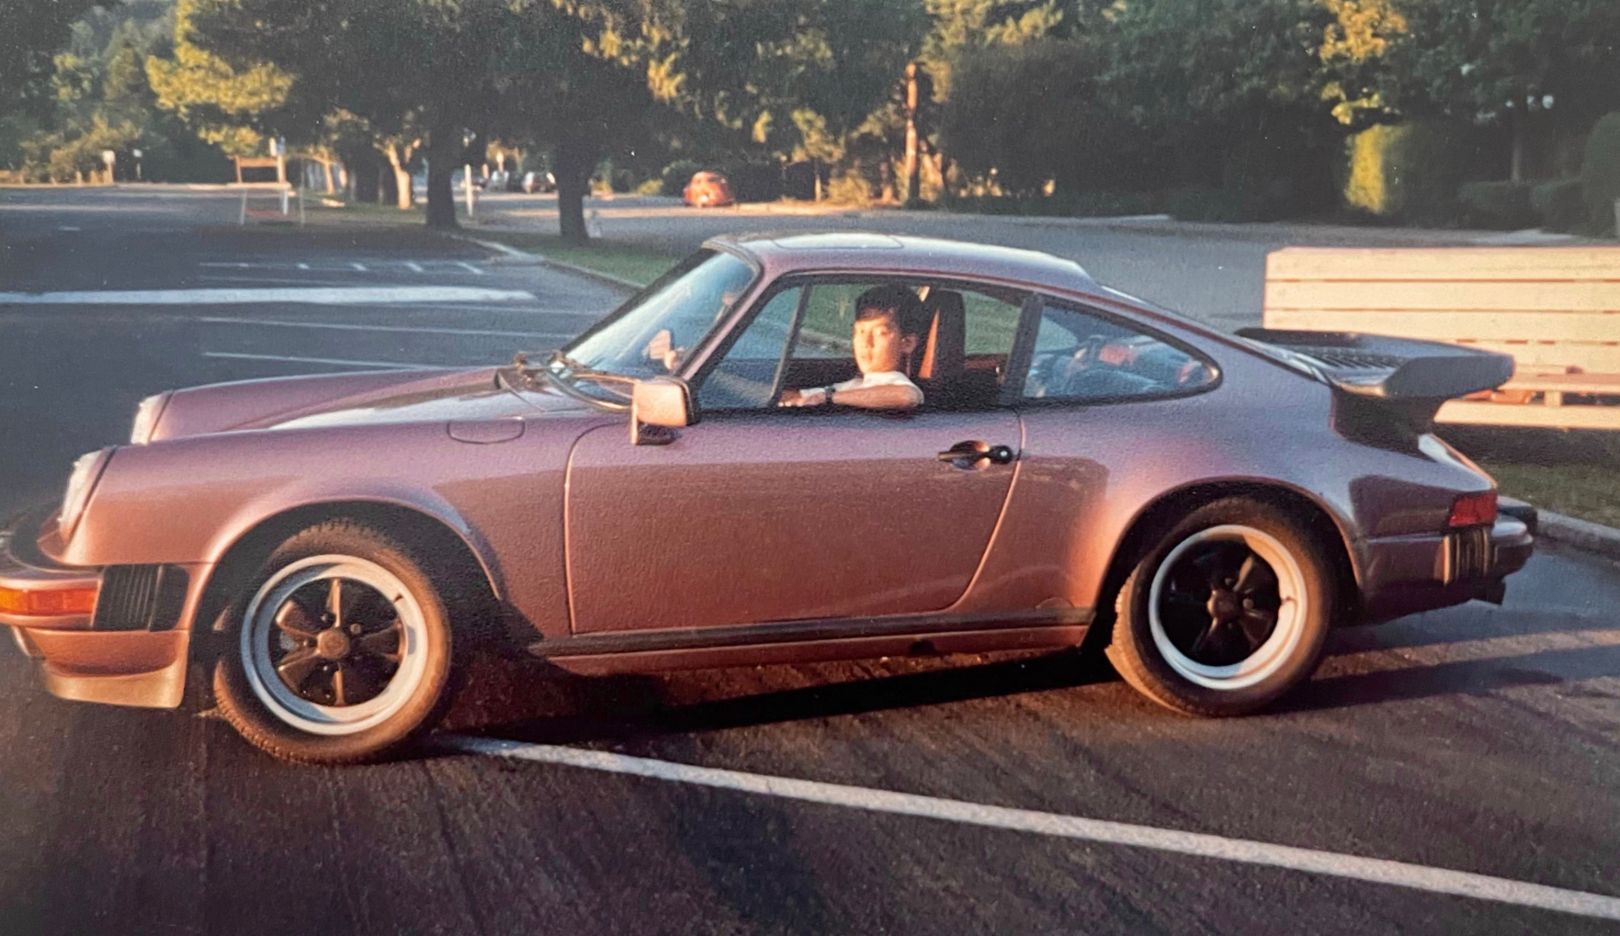 O primeiro passeio no Porsche 911 do pai – na escola, o garoto de 12 anos mal podia esperar para ver o carro novo nesse dia. A experiência despertou a paixão de Daniel Wu por veículos esportivos e pela Porsche. 